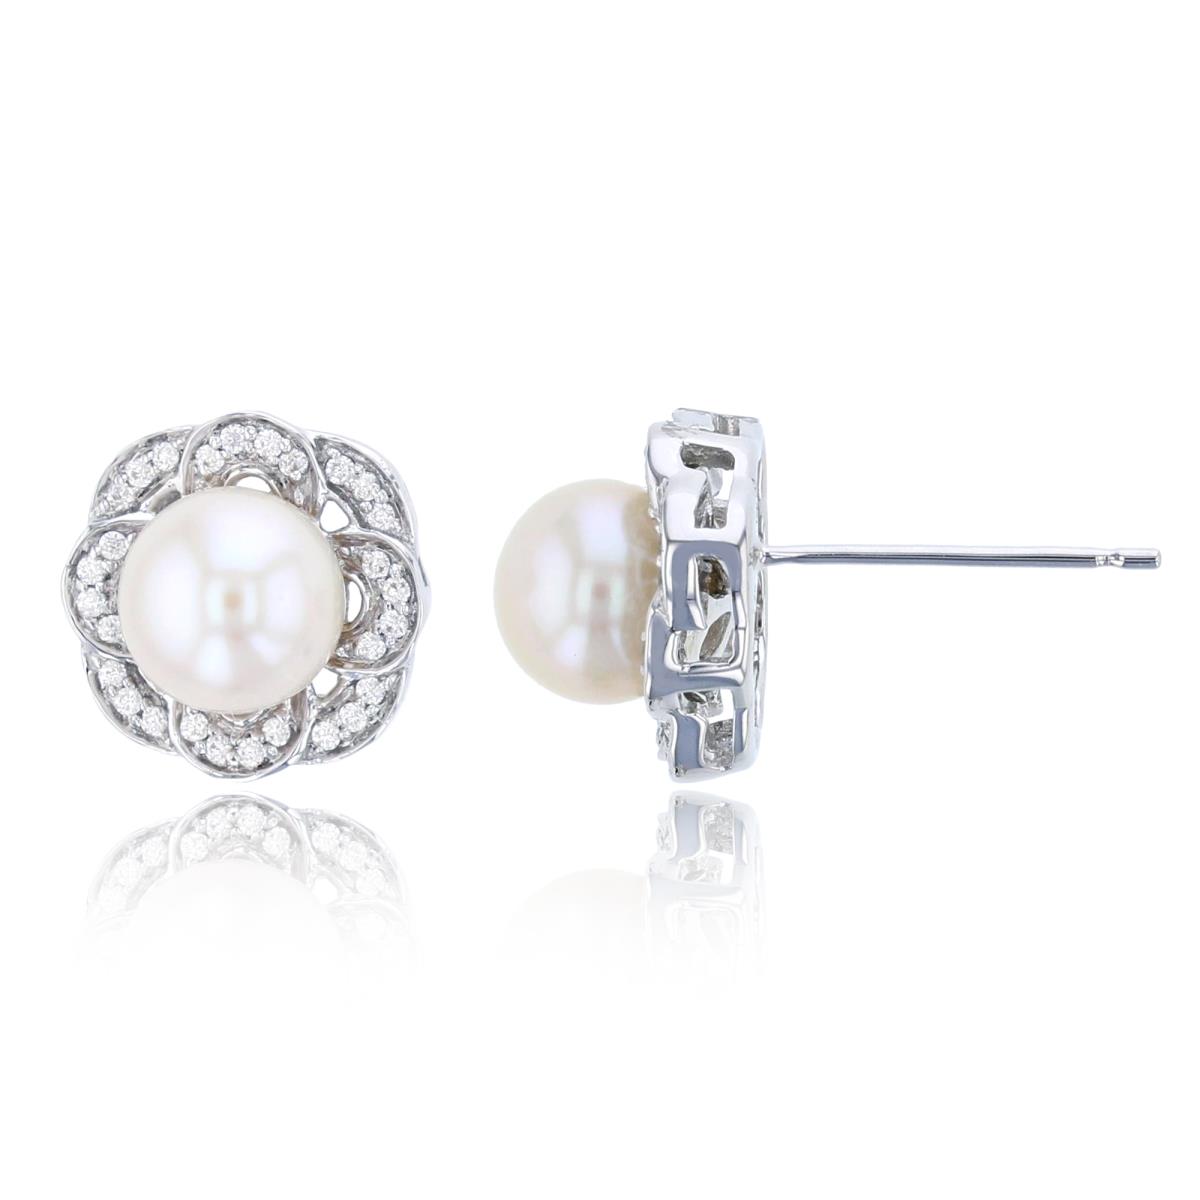 10K White Gold 0.03 CTTW Diamonds Rnd & 6mm Rnd Pearl Stud Earring